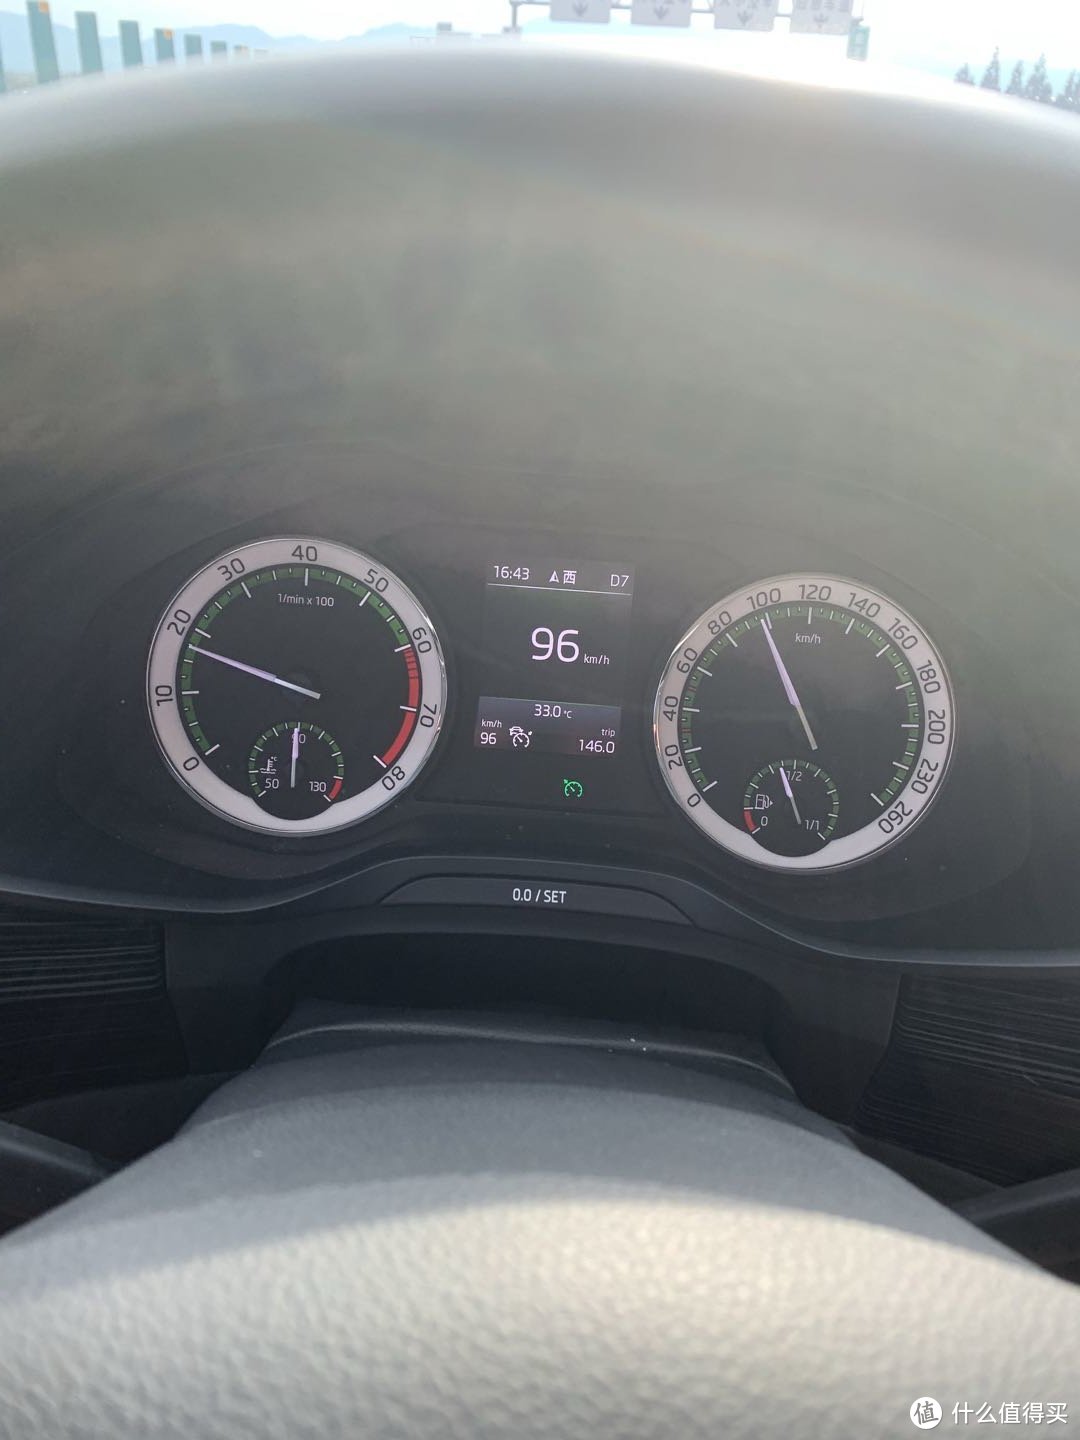 液晶屏的右下角亮了个绿色的标，表示开启了自适应巡航，由于这个需要开车过程中拍，所以只拍了一张